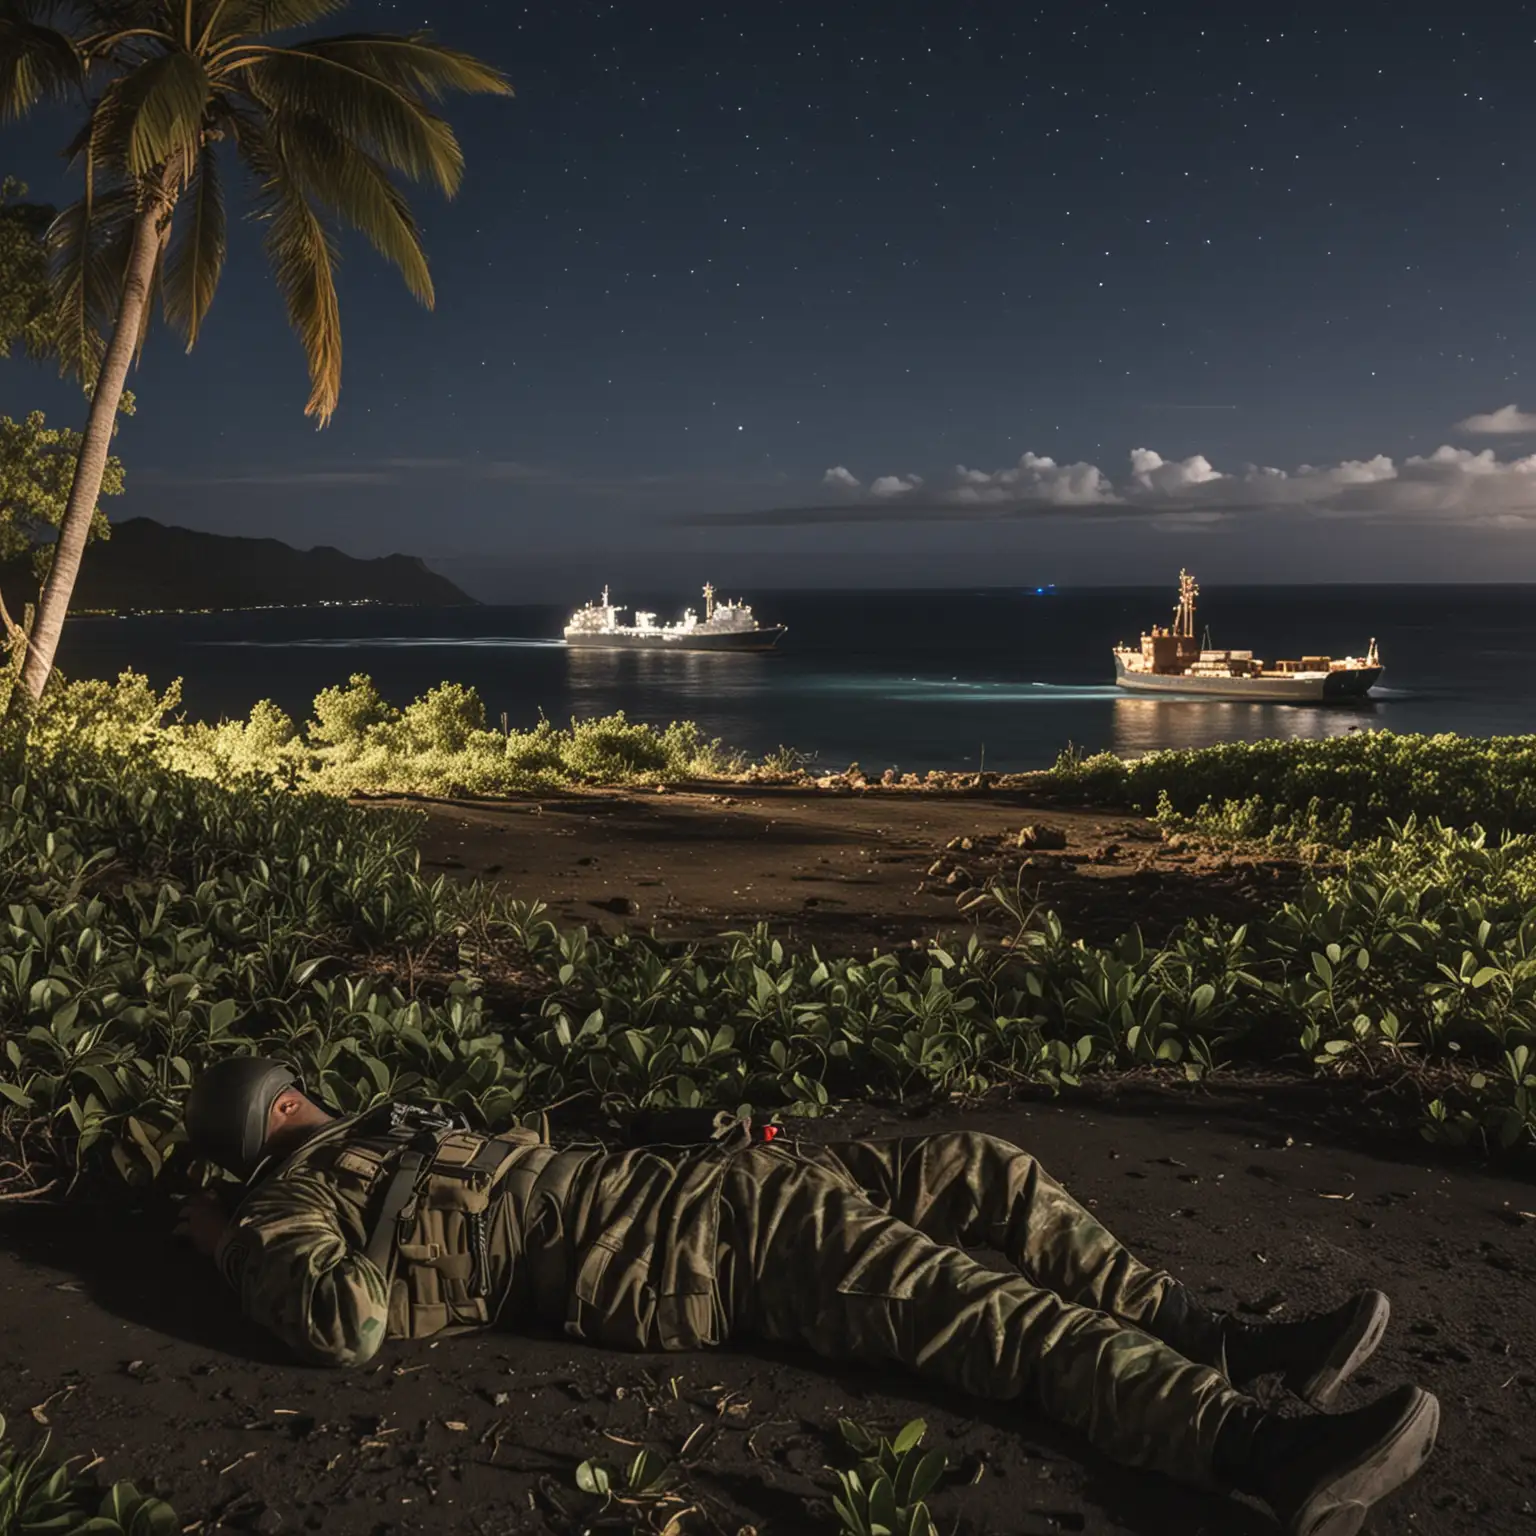 Au second plan, l'environnement tropical de l'ile de la Réunion de nuit, avec une vue sur l'océan avec un cargo au loin. 
Au premier plan, un corps au sol d'un militaire avec un treillis